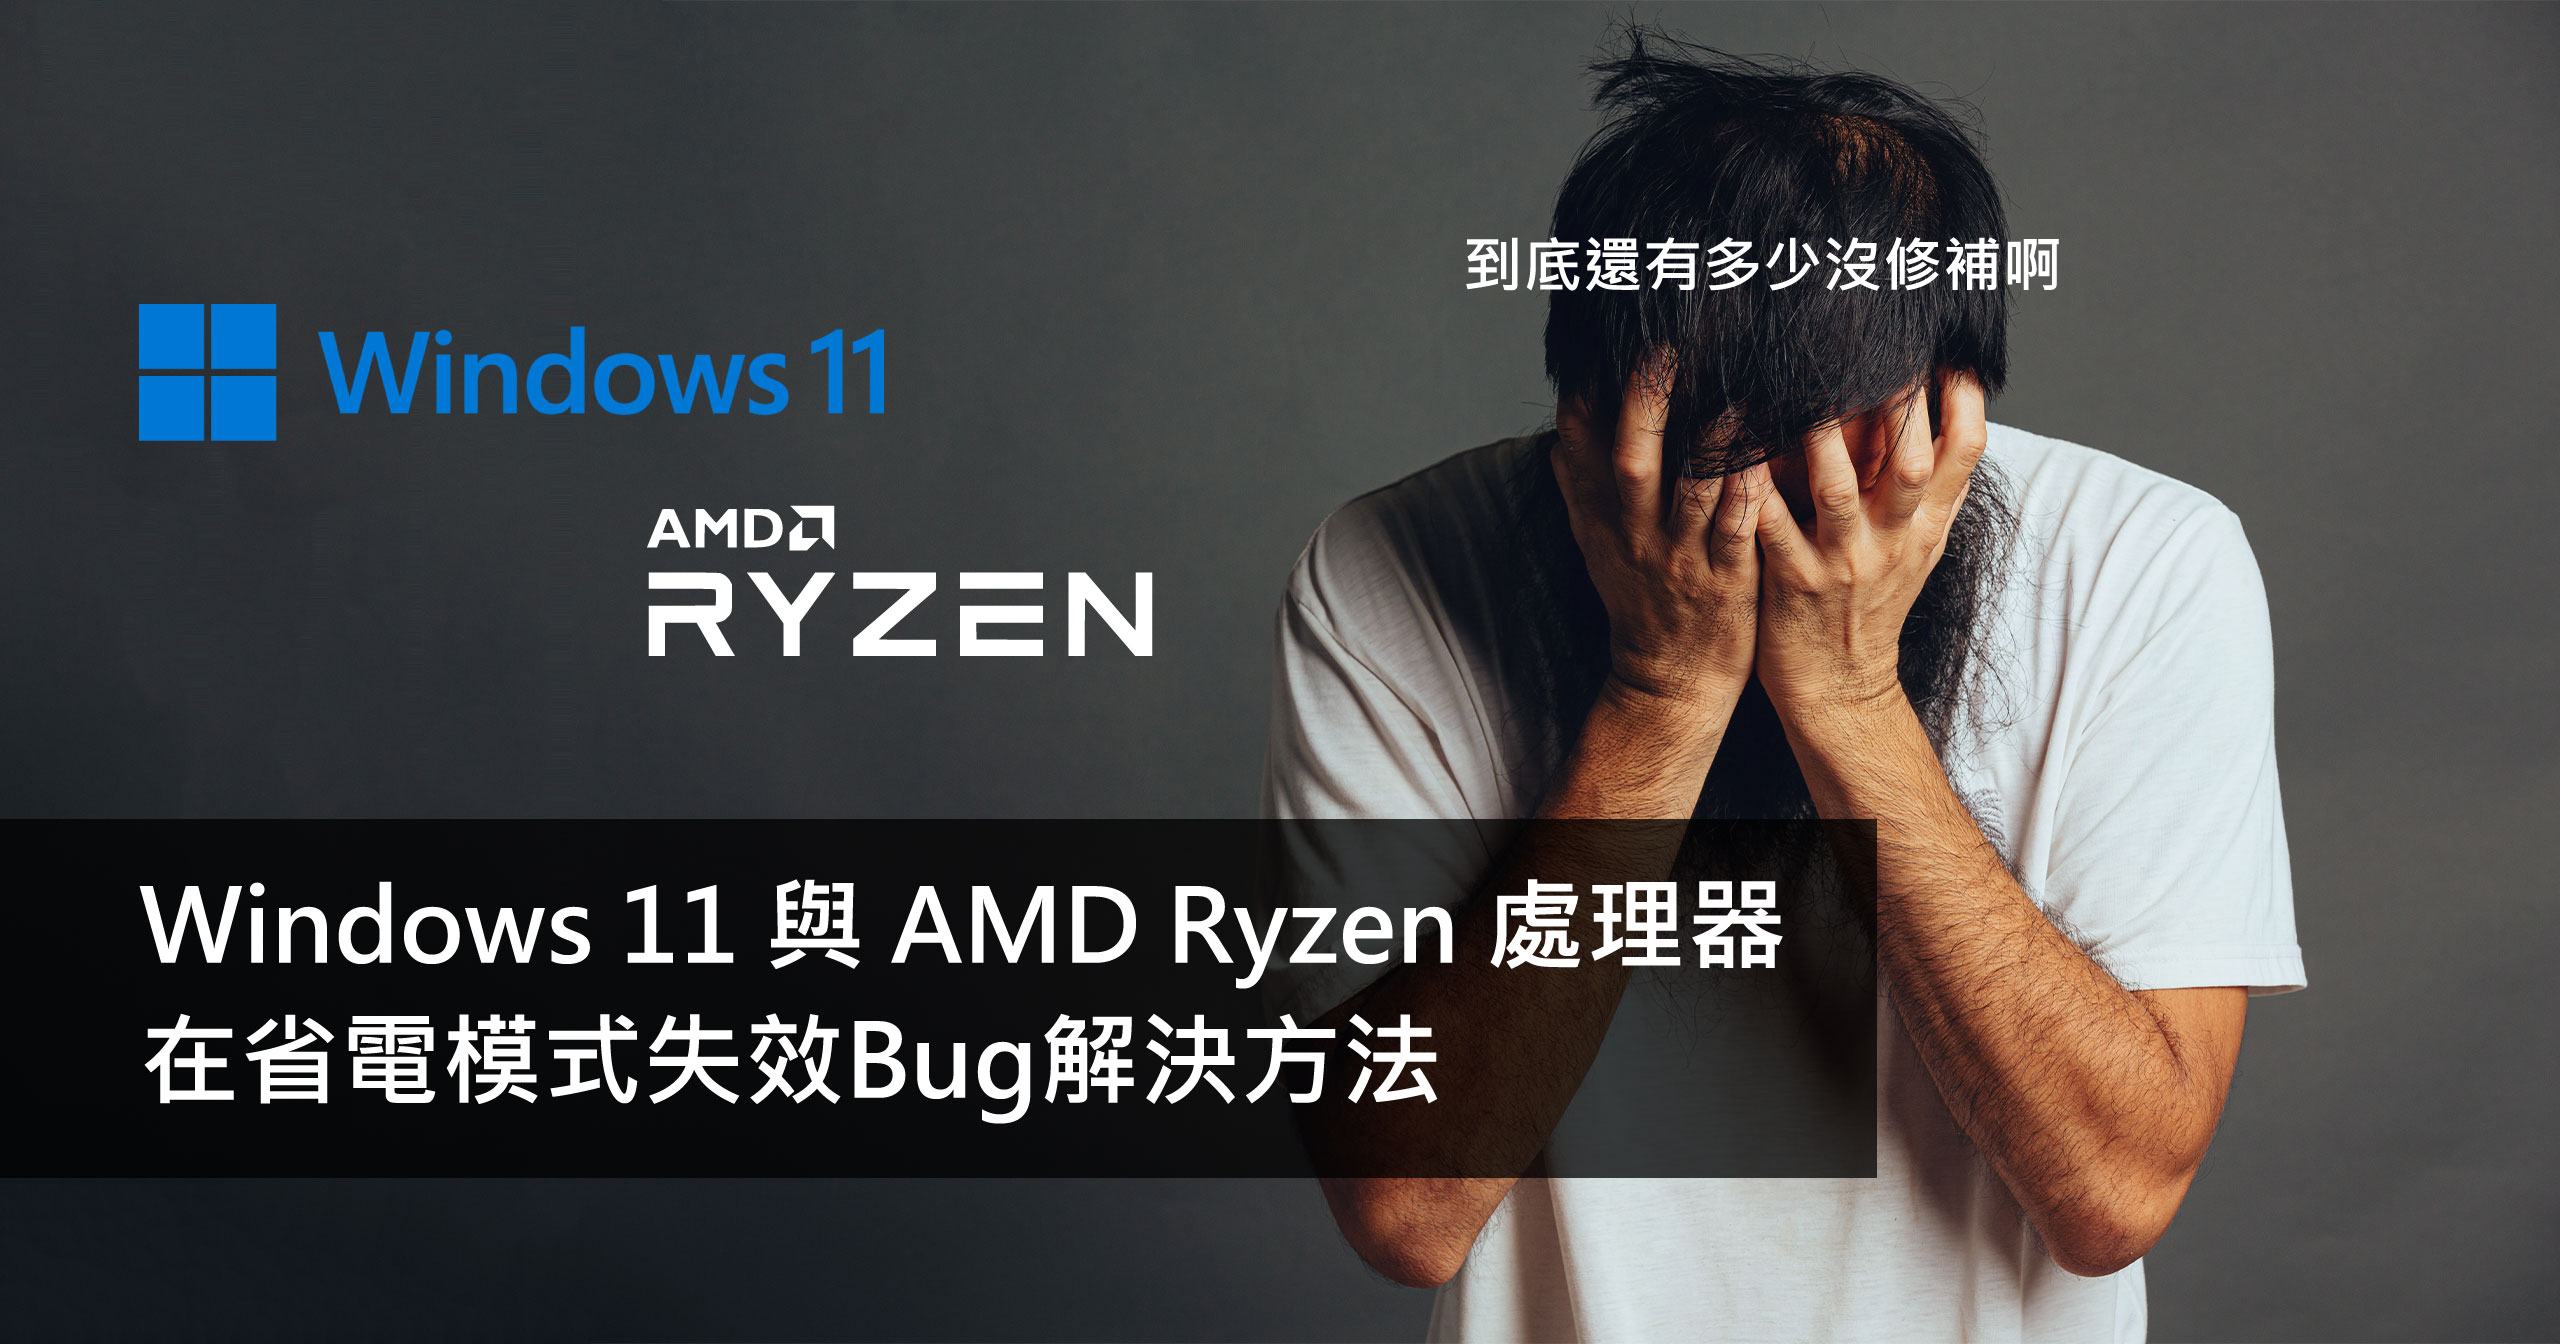 Win11 Amd Ryzen Power Mode